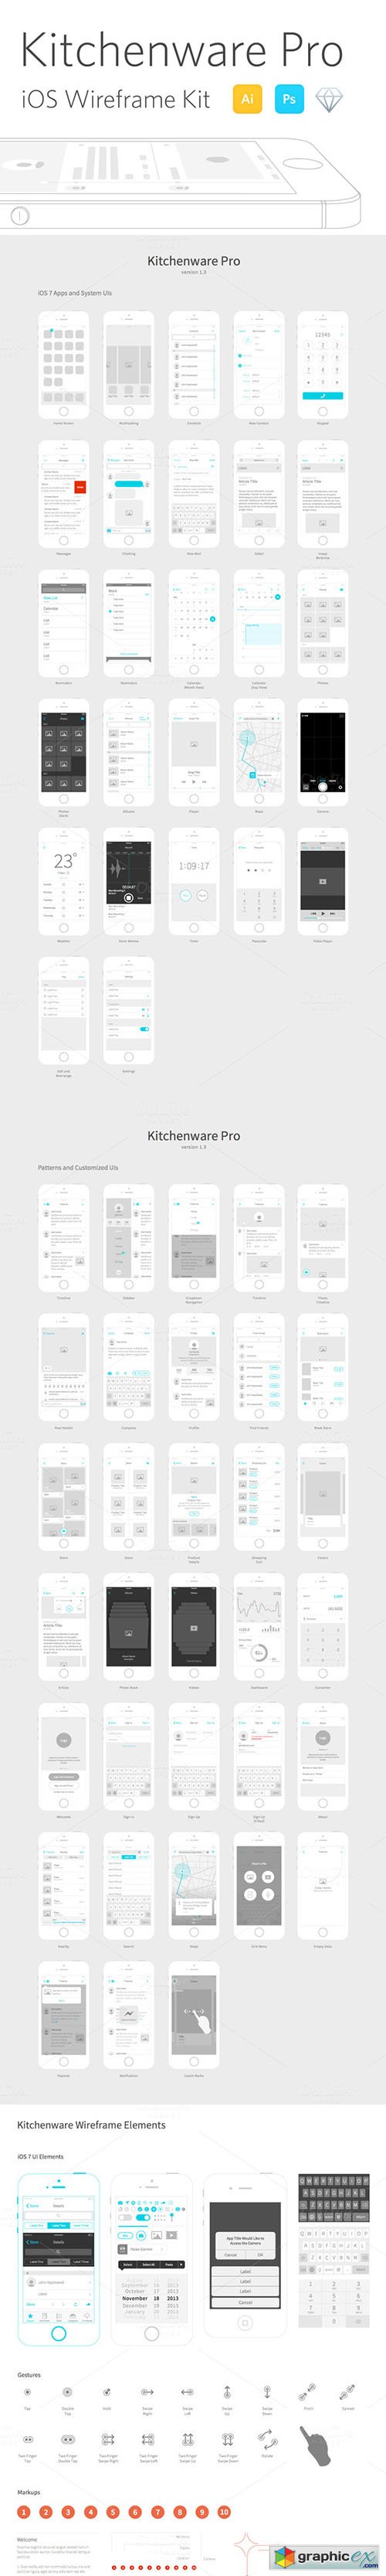 Kitchenware Pro - iOS Wireframe Kit